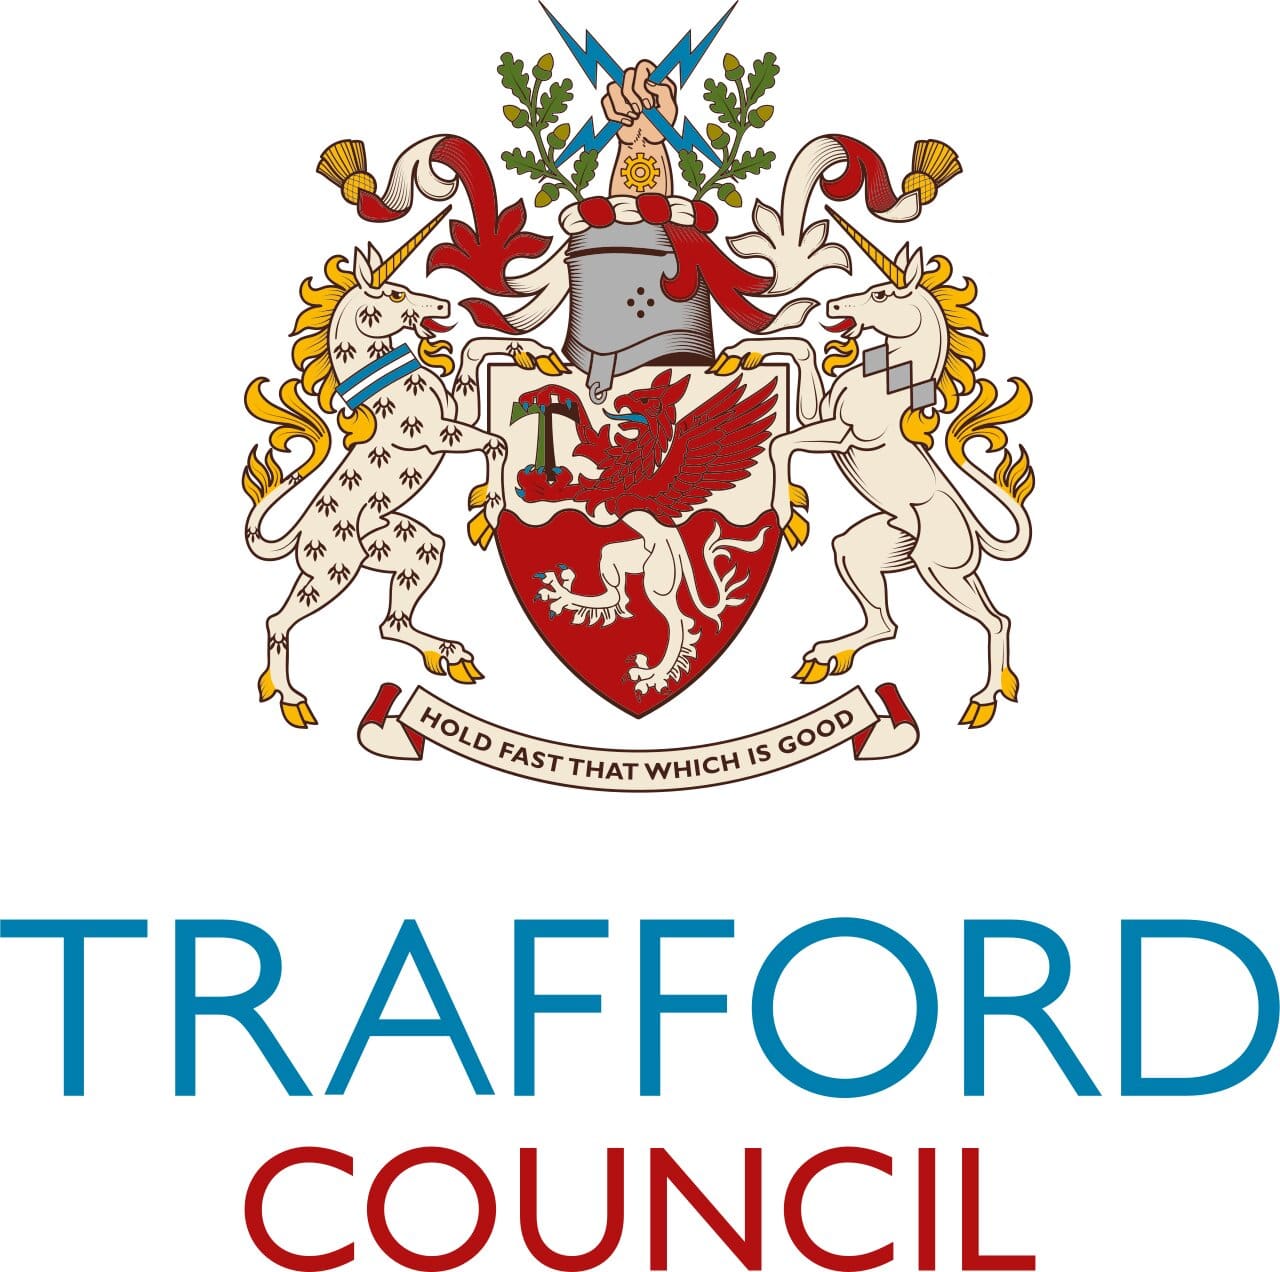 Trafford Council logo